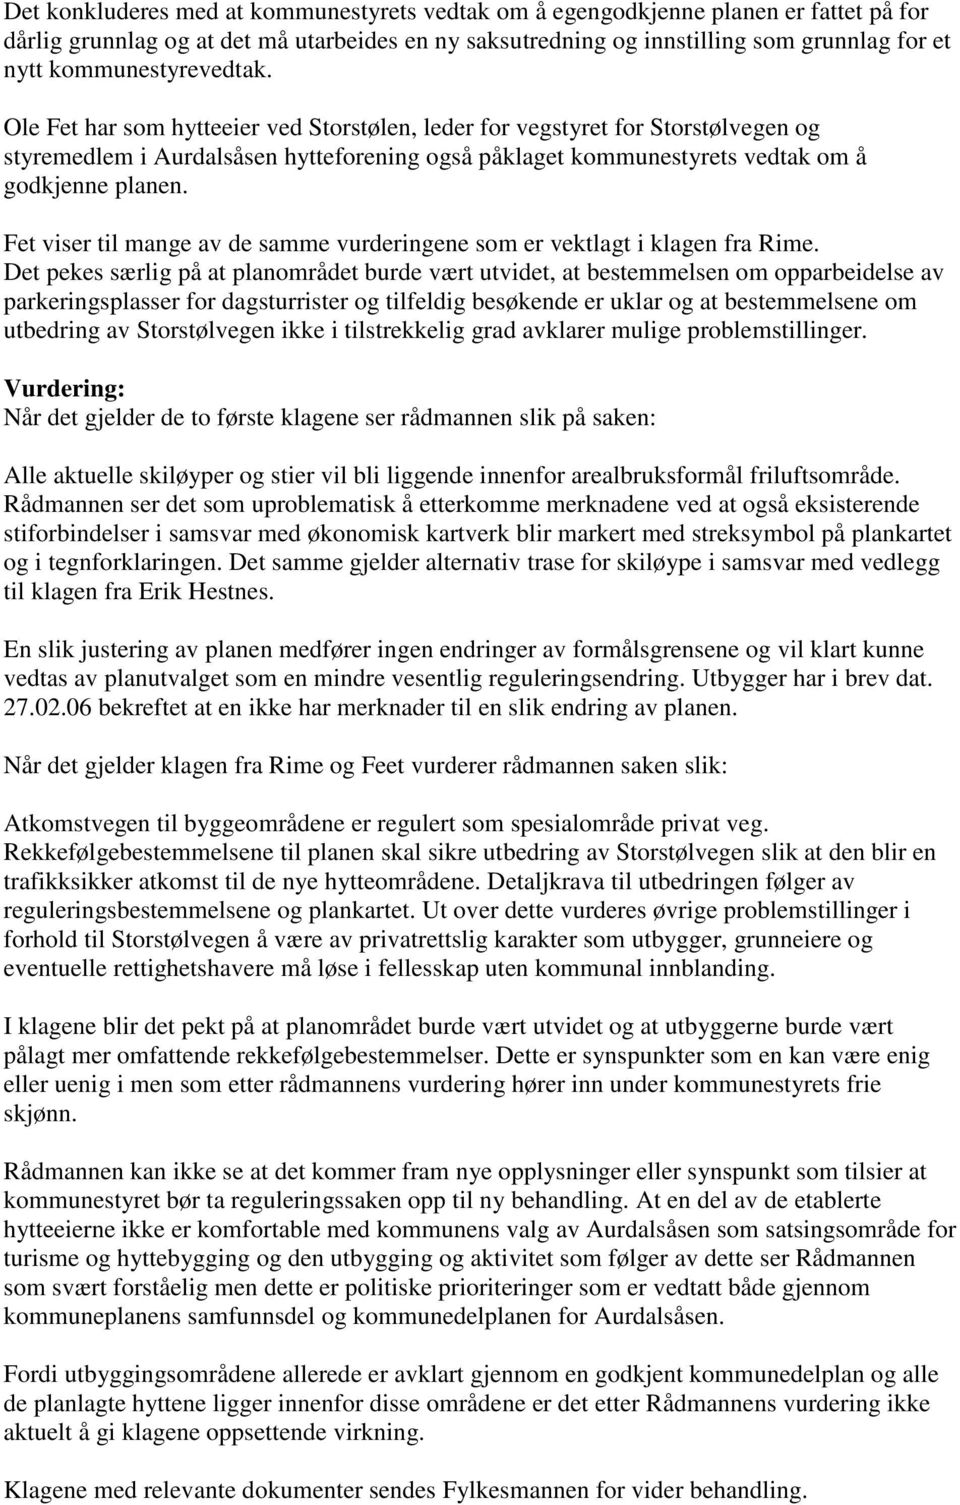 Ole Fet har som hytteeier ved Storstølen, leder for vegstyret for Storstølvegen og styremedlem i Aurdalsåsen hytteforening også påklaget kommunestyrets vedtak om å godkjenne planen.